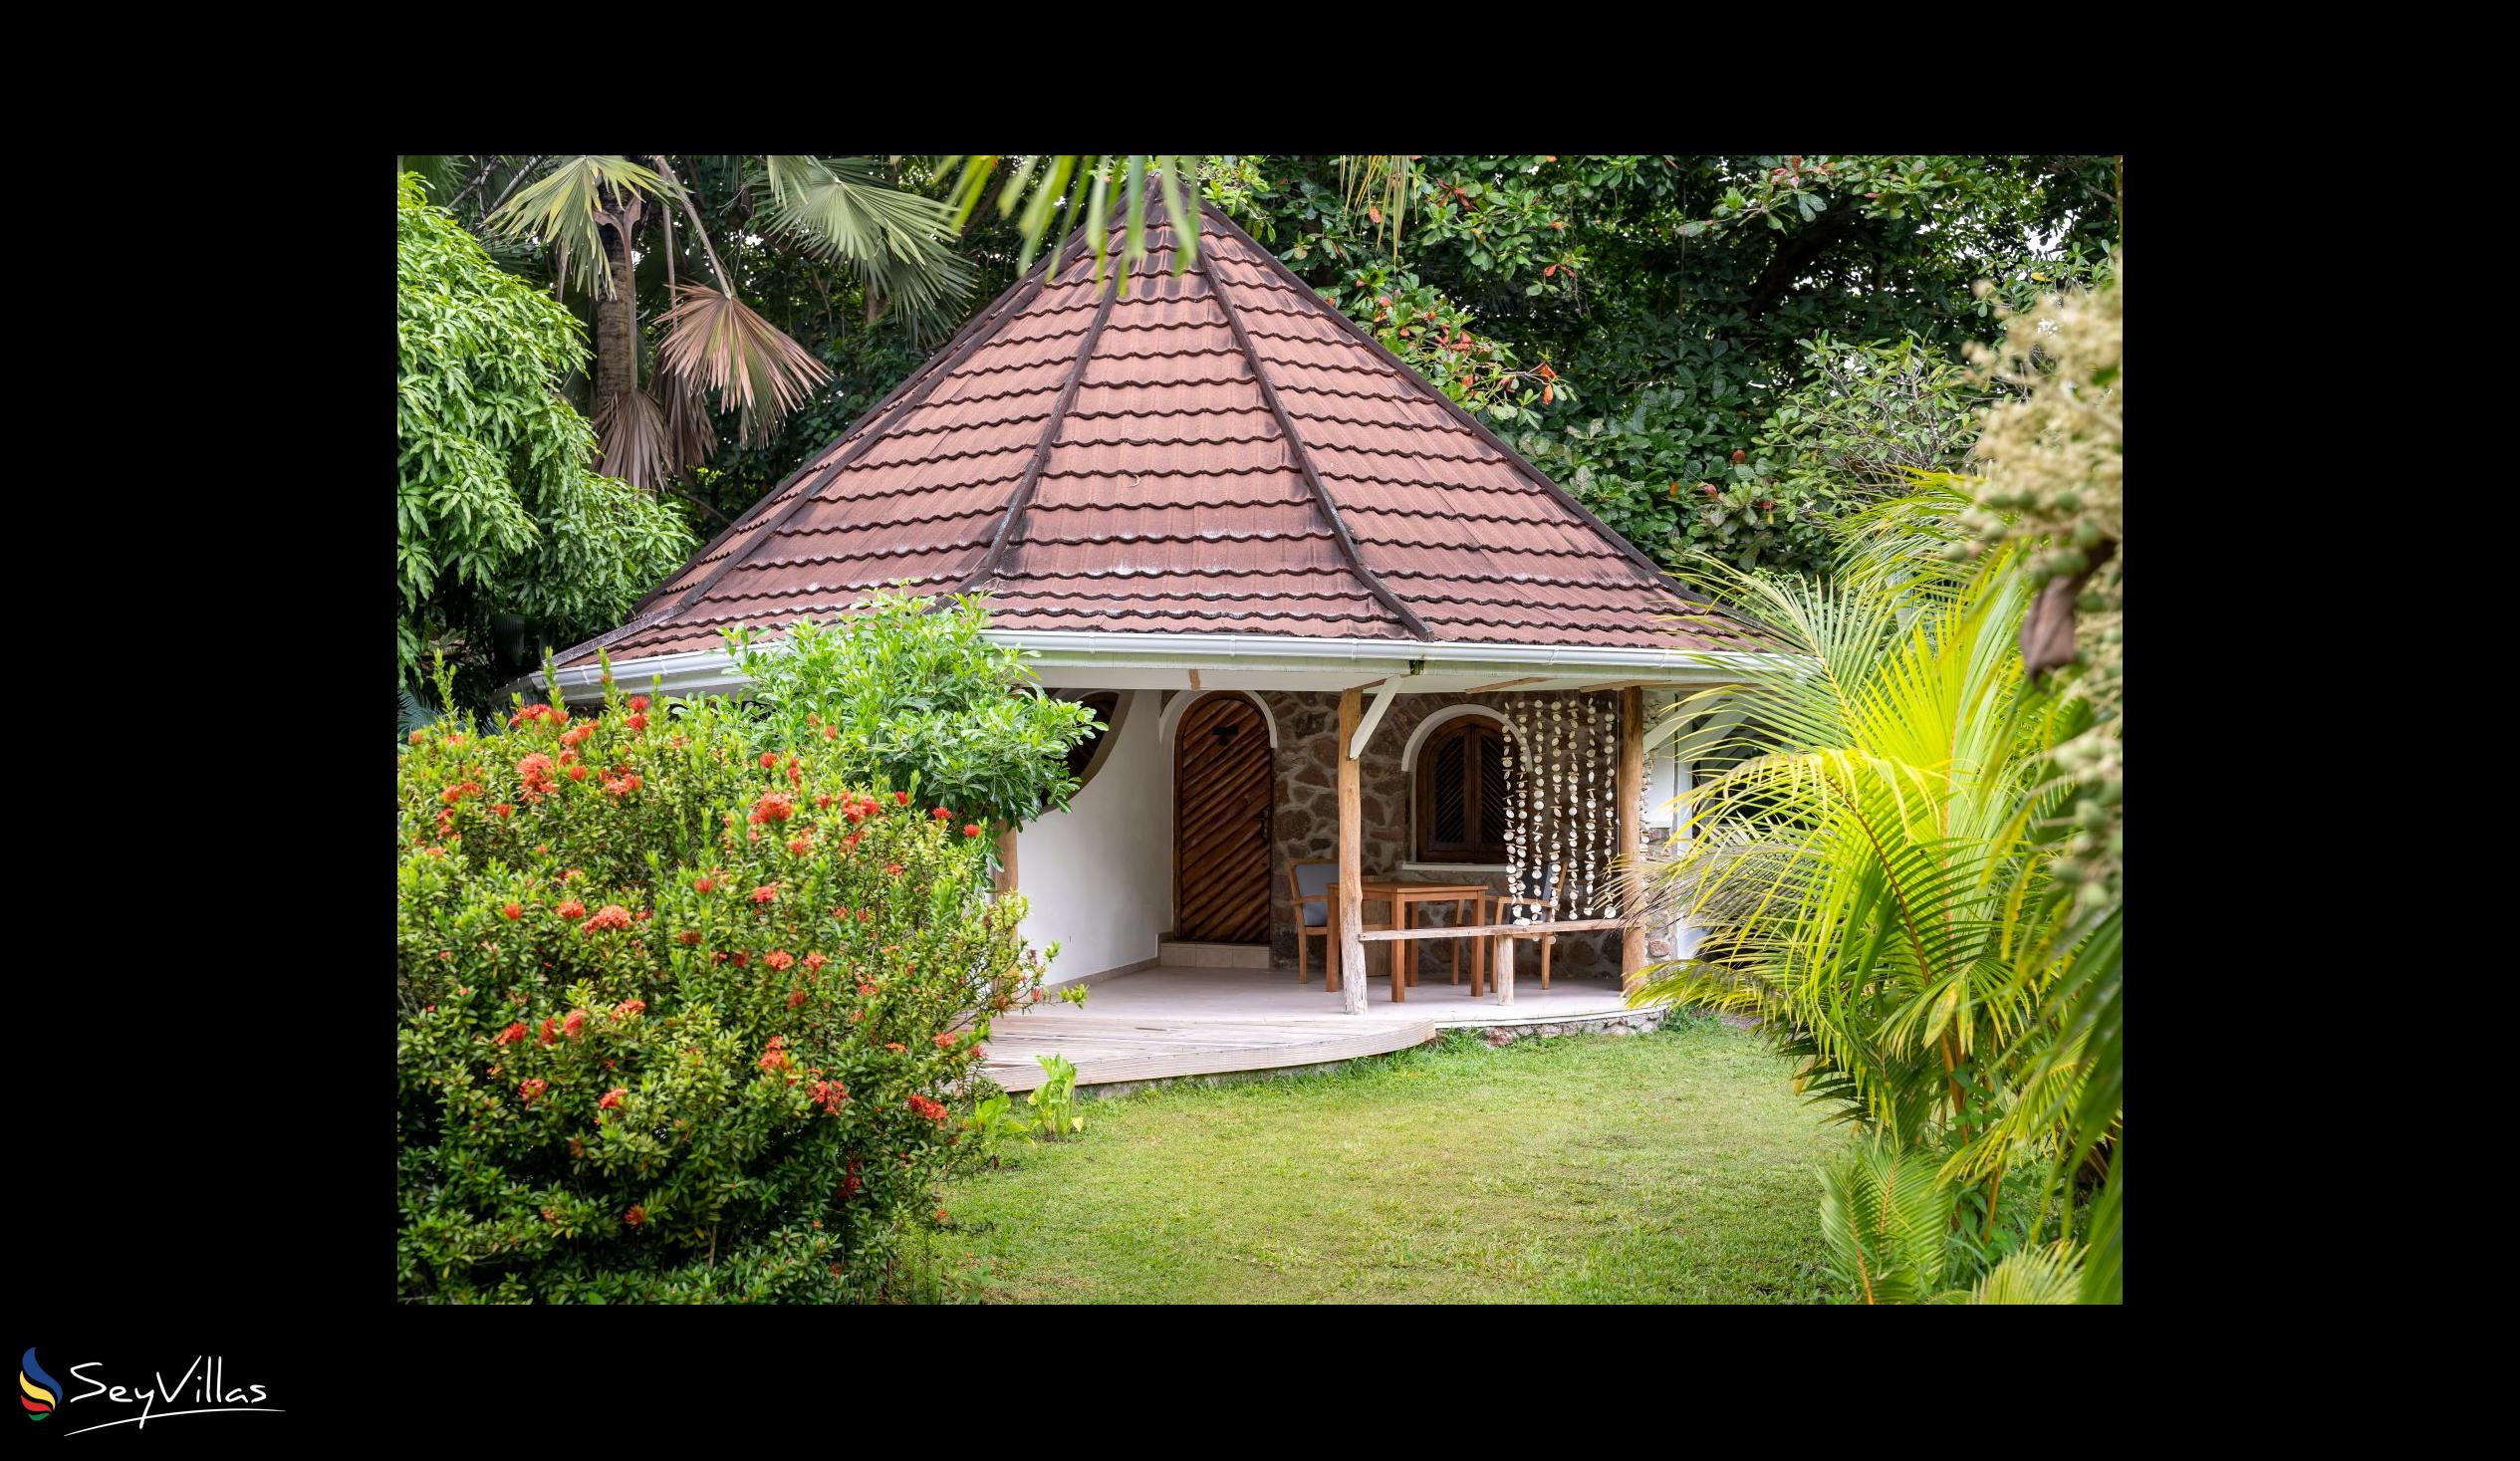 Photo 63: Bliss Hotel Praslin - Eden Garden - Charm Room - Praslin (Seychelles)